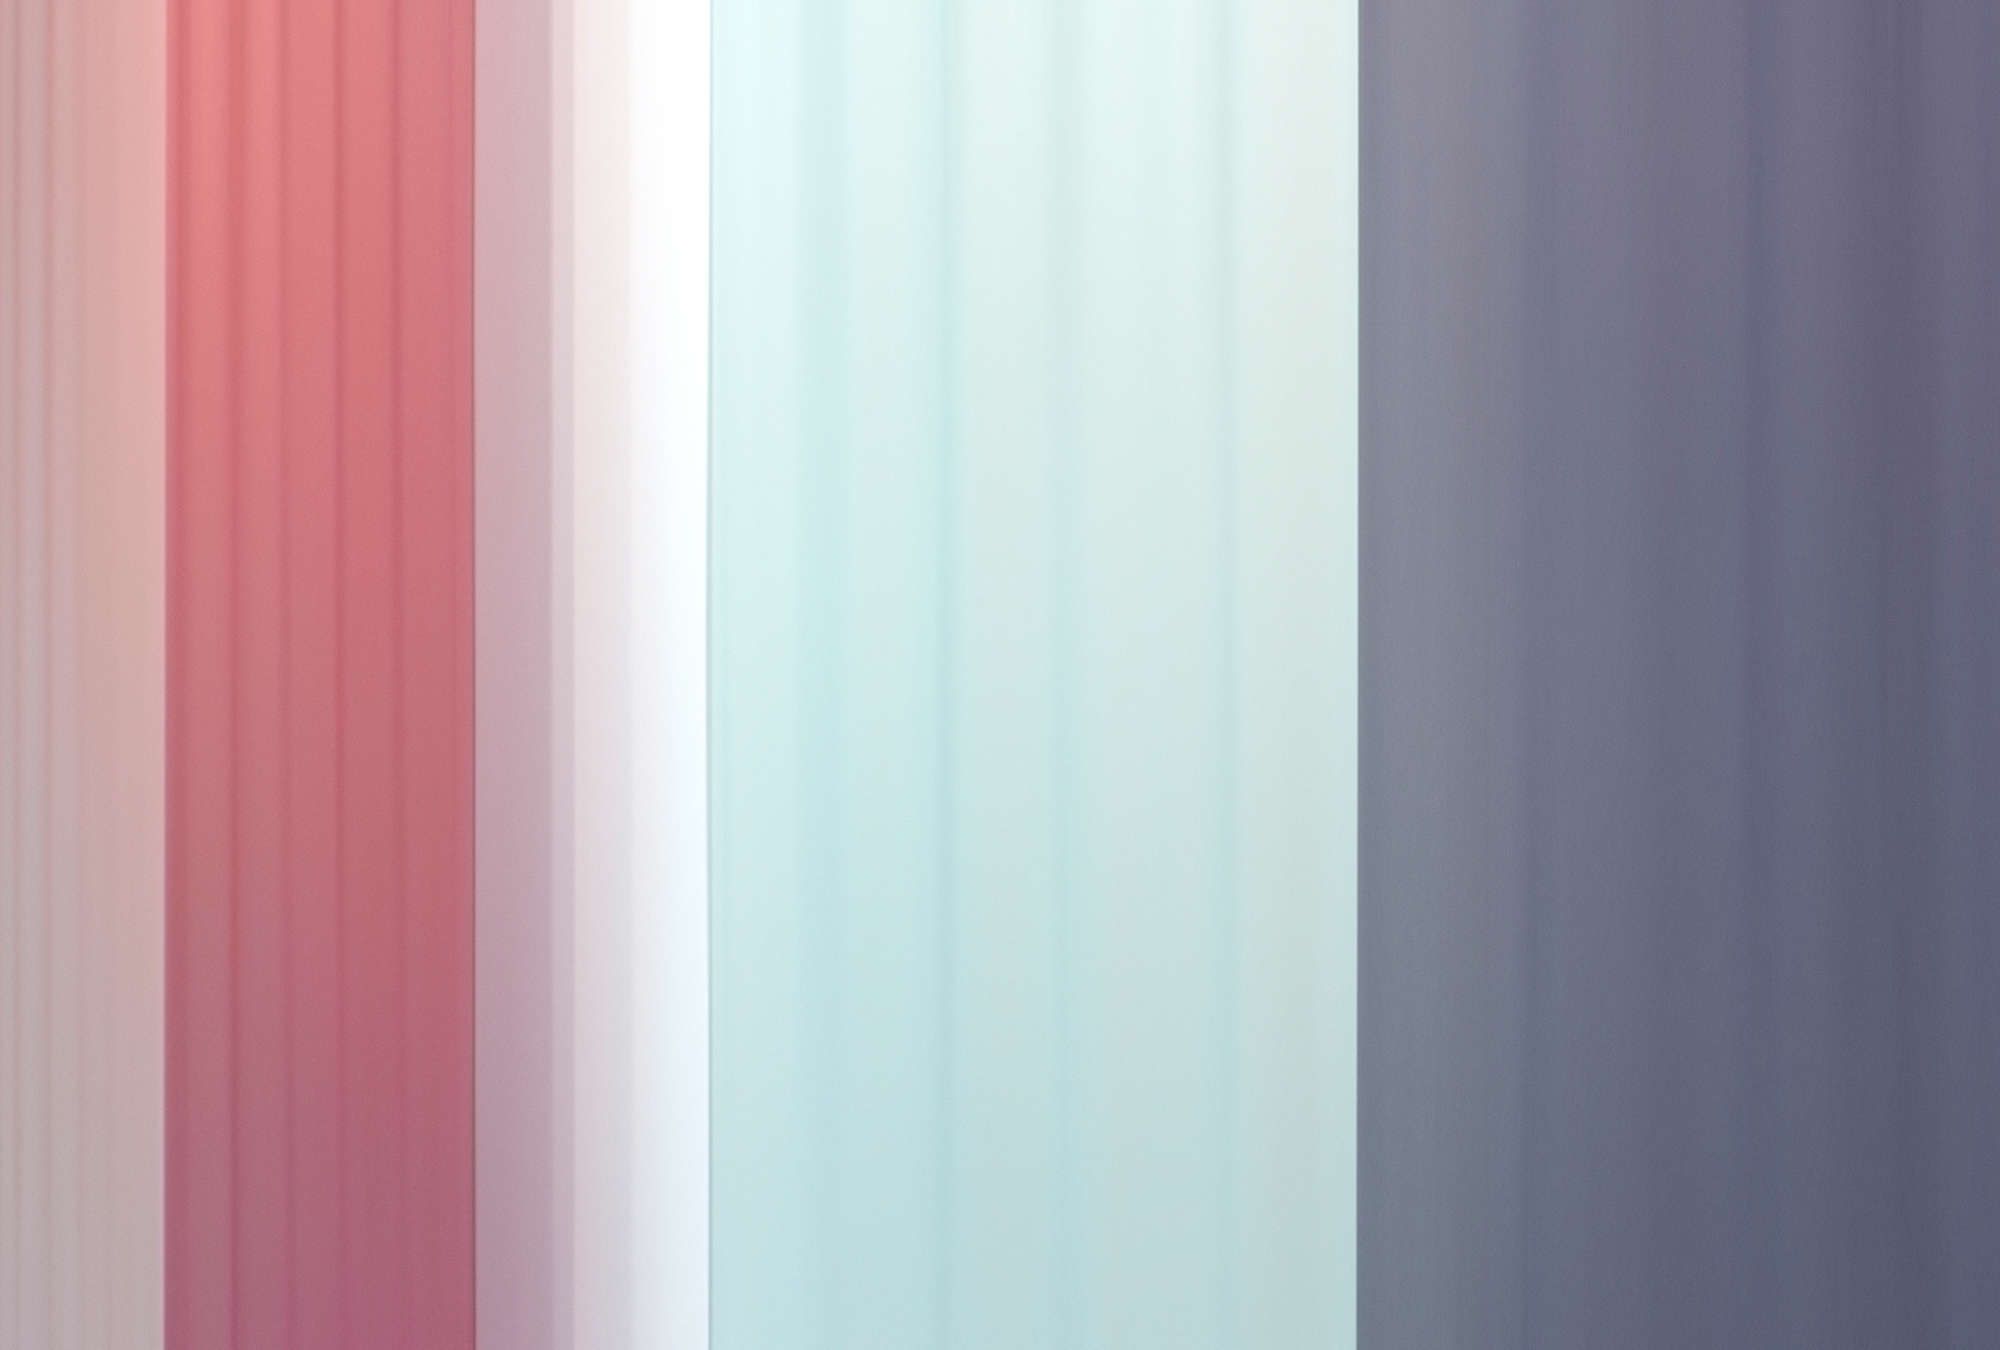             Digital behang »co-colores 2« - kleurverloop met strepen - roze, lichtblauw donkerblauw | licht structuurvlies
        